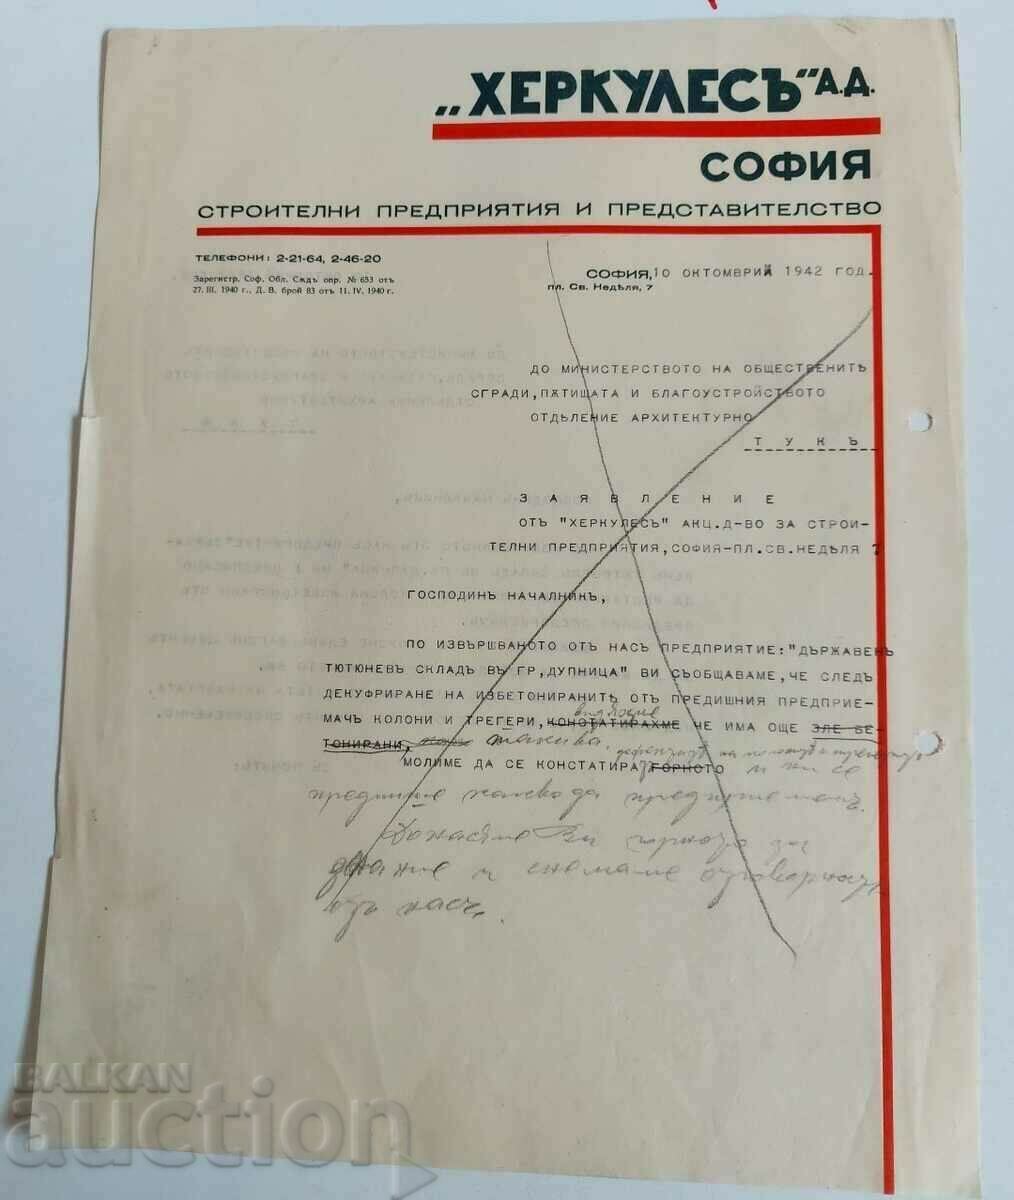 1942 ÎNTREPRINDERILE DE CONSTRUCȚI HERCULES DEPOZIT